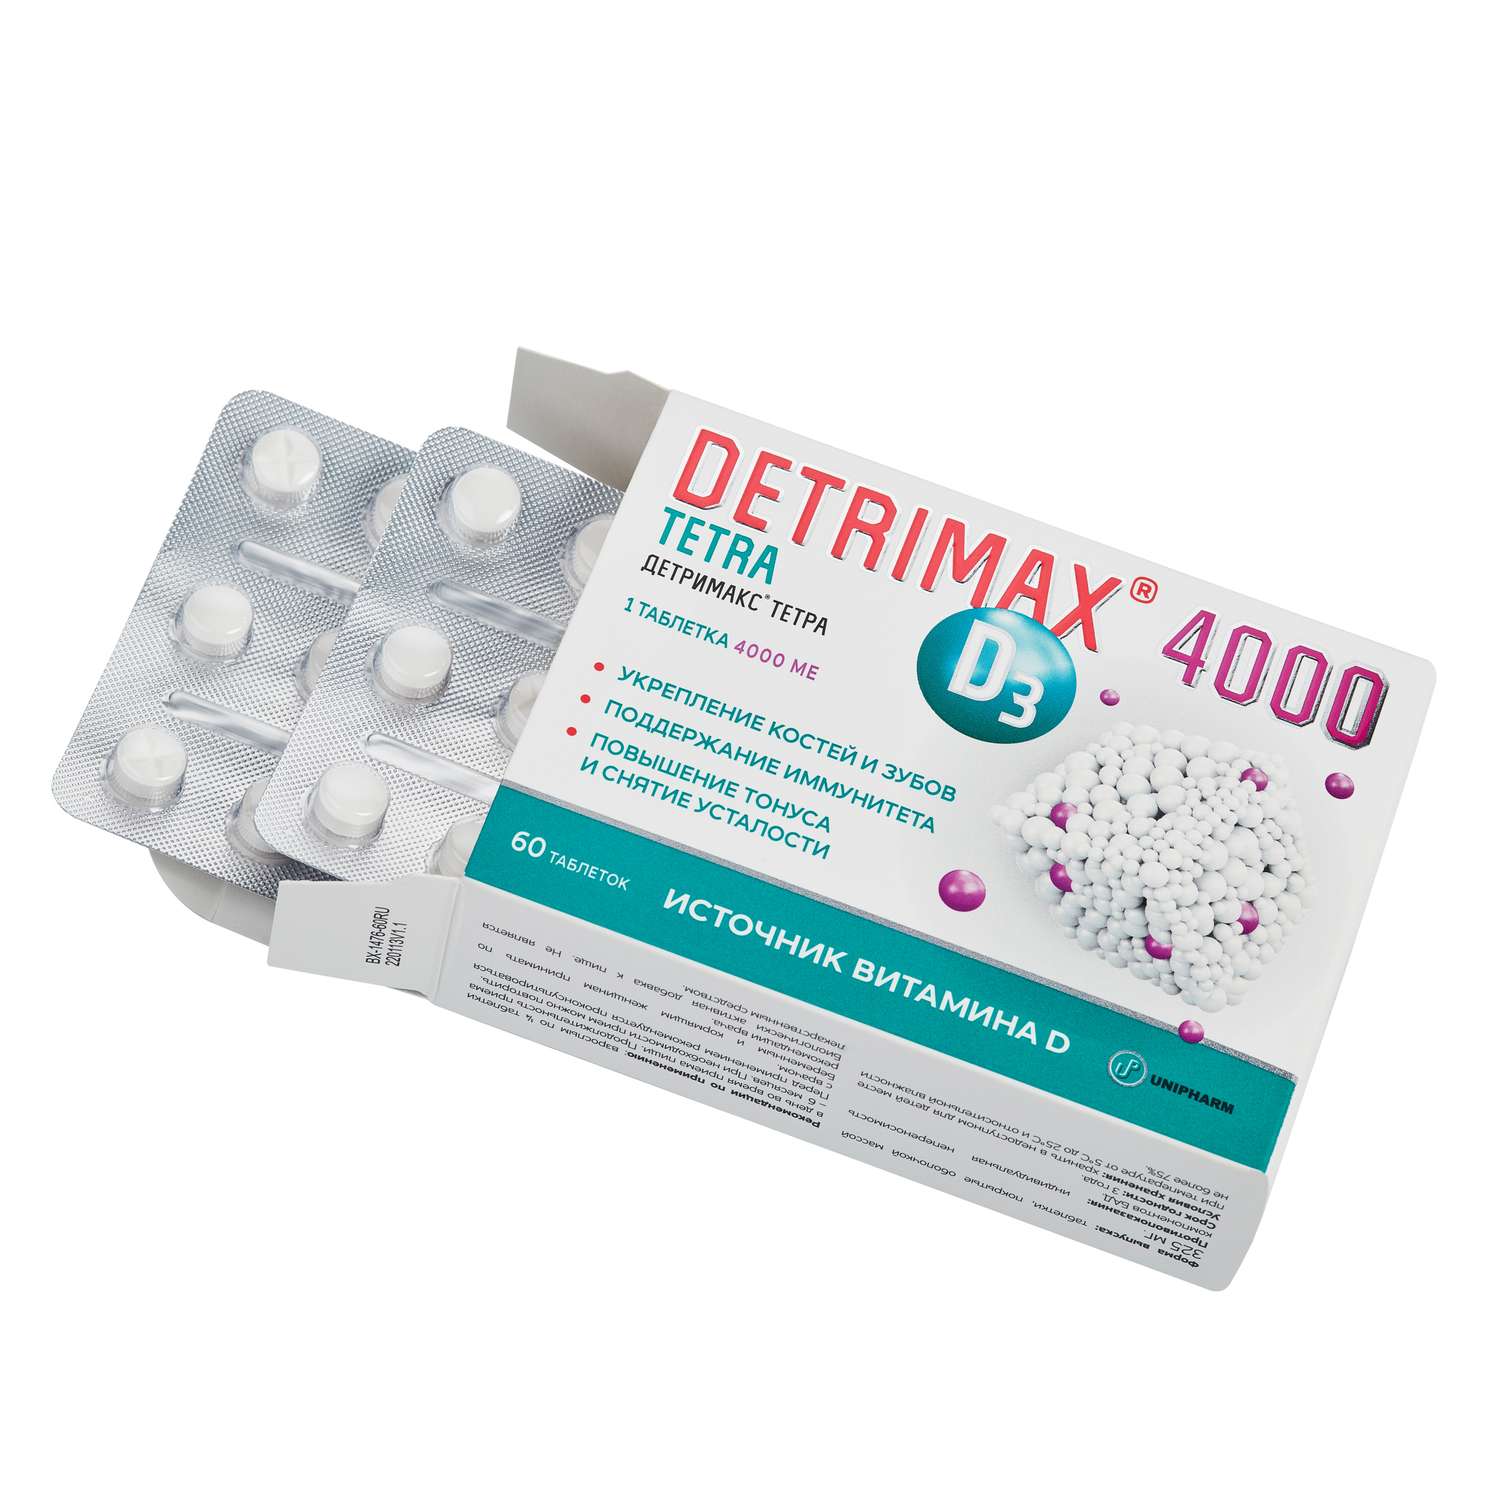 Биологически активная добавка витамин Д3 Детримакс тетра 4000МЕ 60таблеток - фото 2